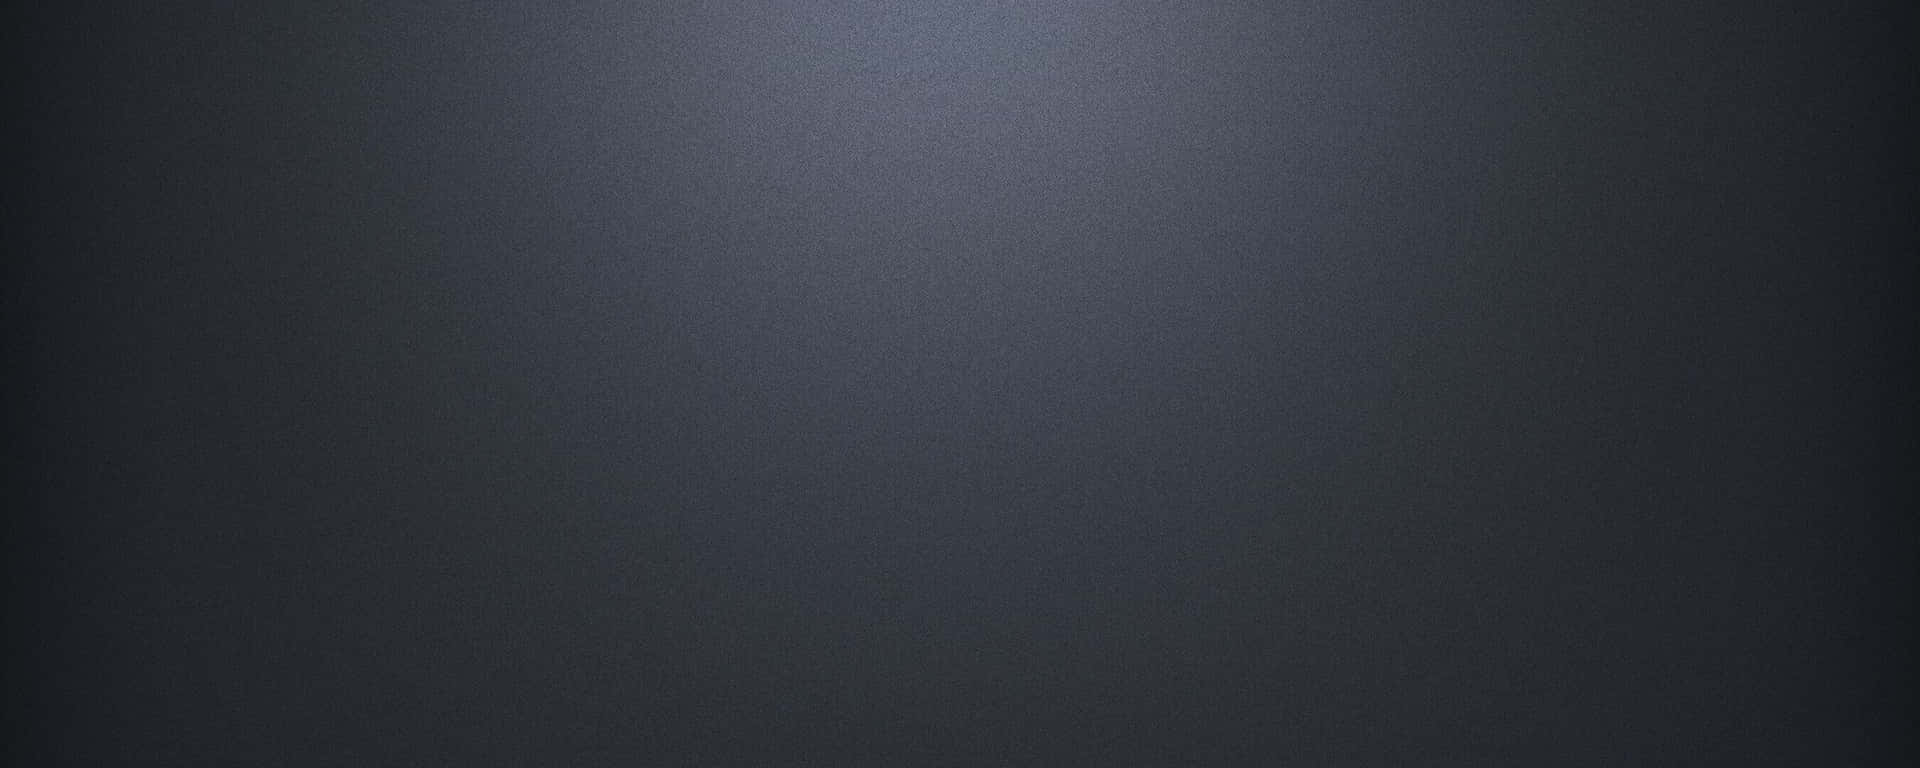 dark grey color background